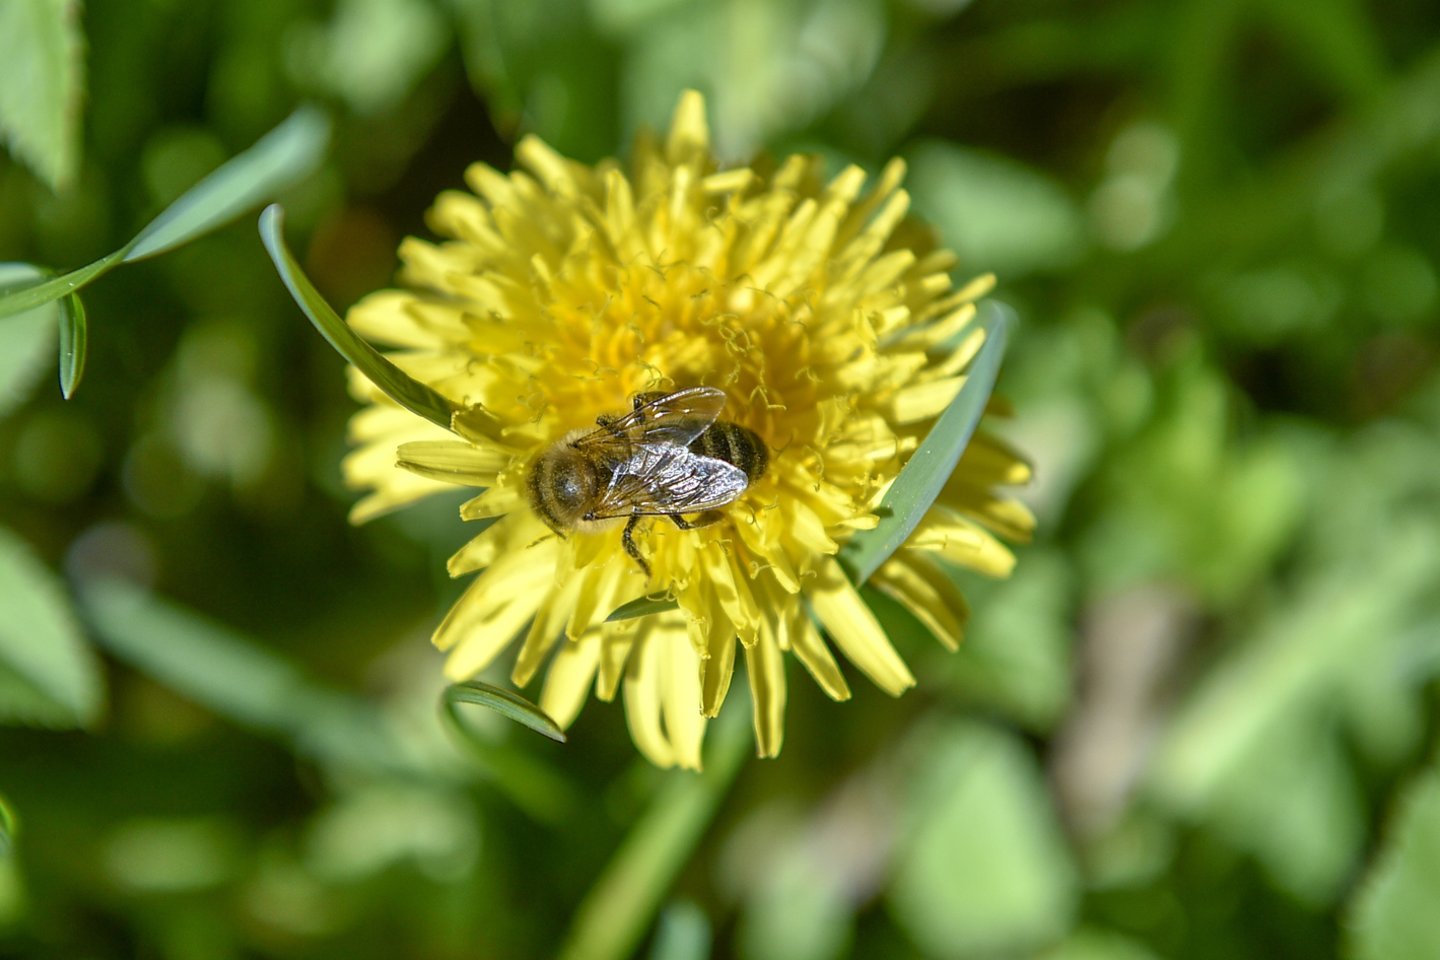 Net ir vienas kvadratinis metras žydinčios pievos esant tinkamoms sąlygoms gali pritraukti ir sukurti galimybę pasimaitinti šimtams ar tūkstančiams bičių, kitų vabzdžių.<br>V.Ščiavinsko nuotr.